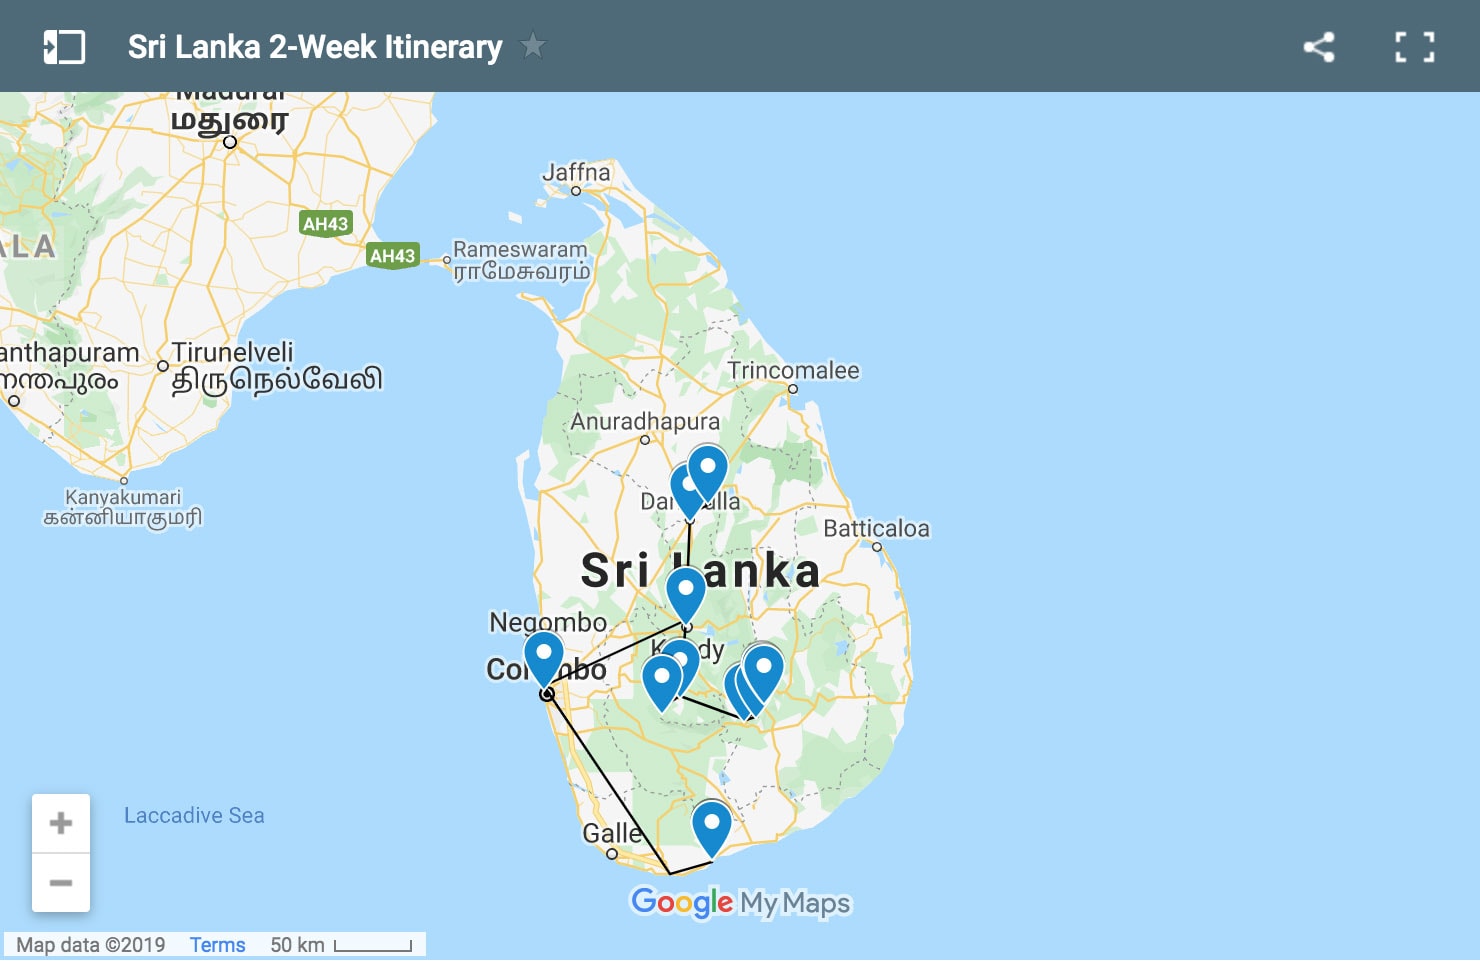 Sri Lanka 2-Week Itinerary Map